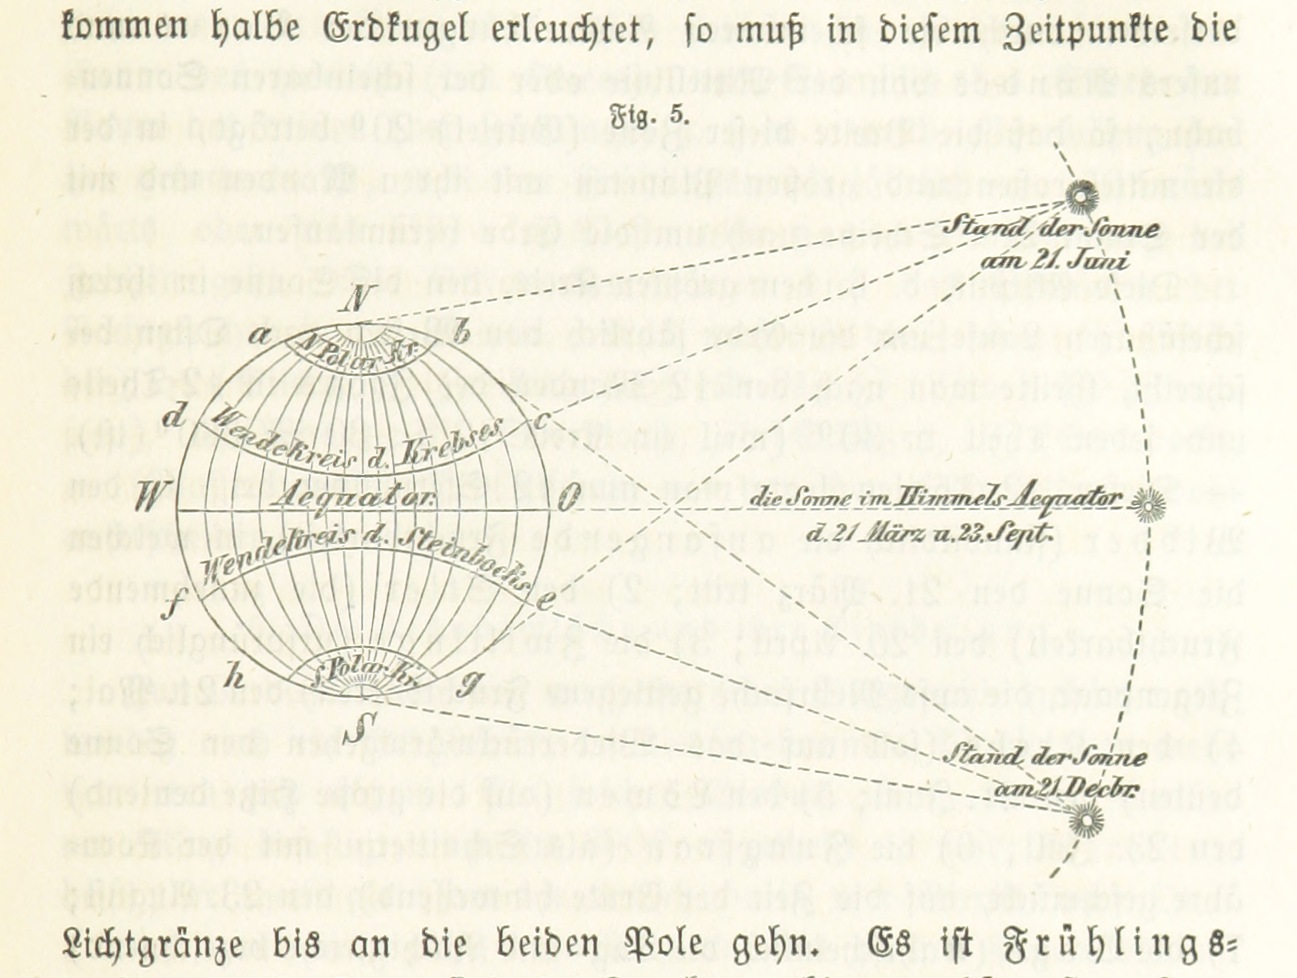 _Allgemeine Erdbeschreibung_ by FLEISCHHAUER, Johann Heinrich. Public Domain, from the British Library's collections, 2013